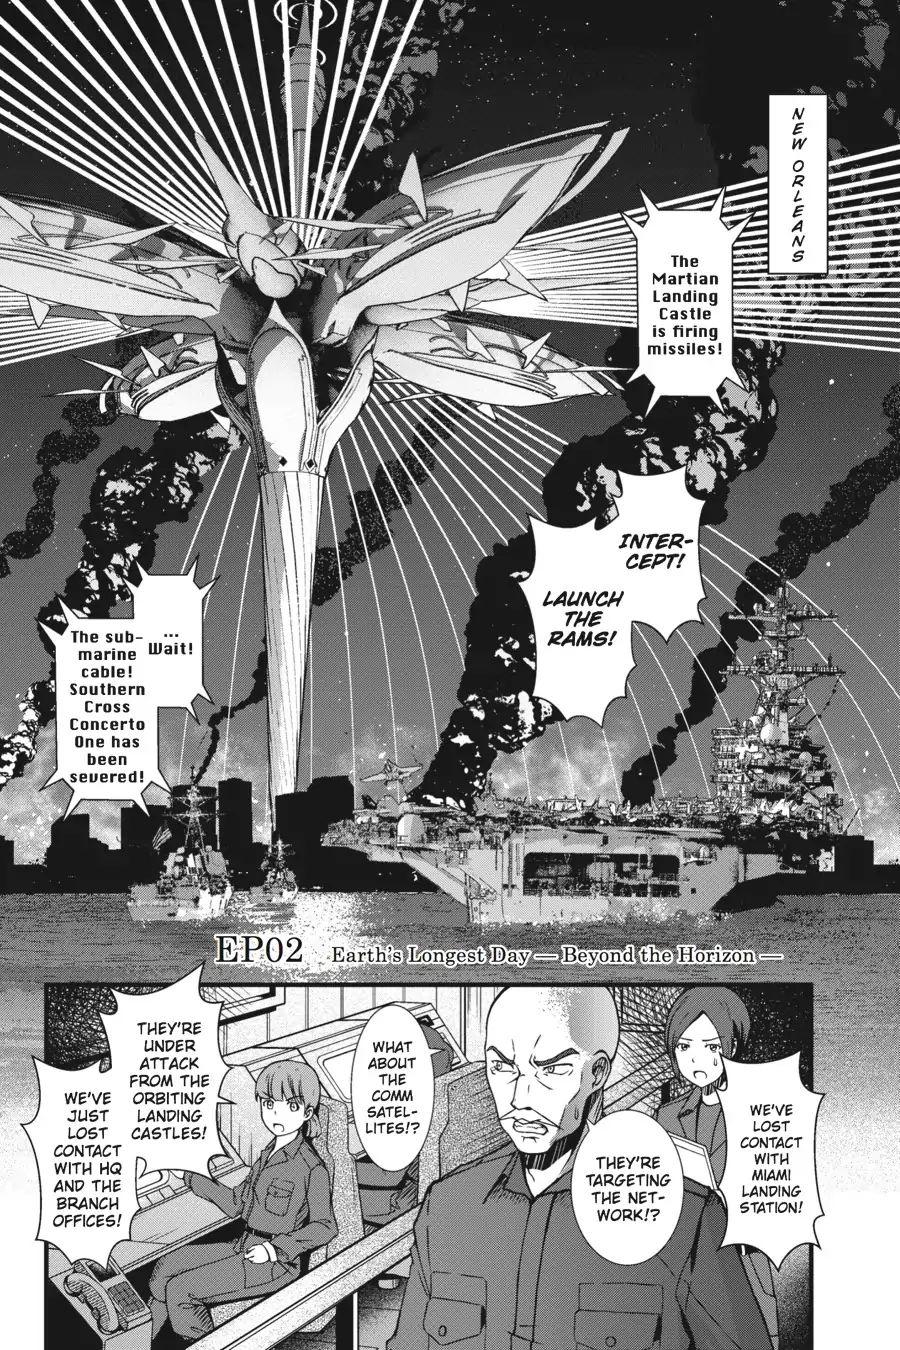 Aldnoah Zero Season One Manga Volume 4